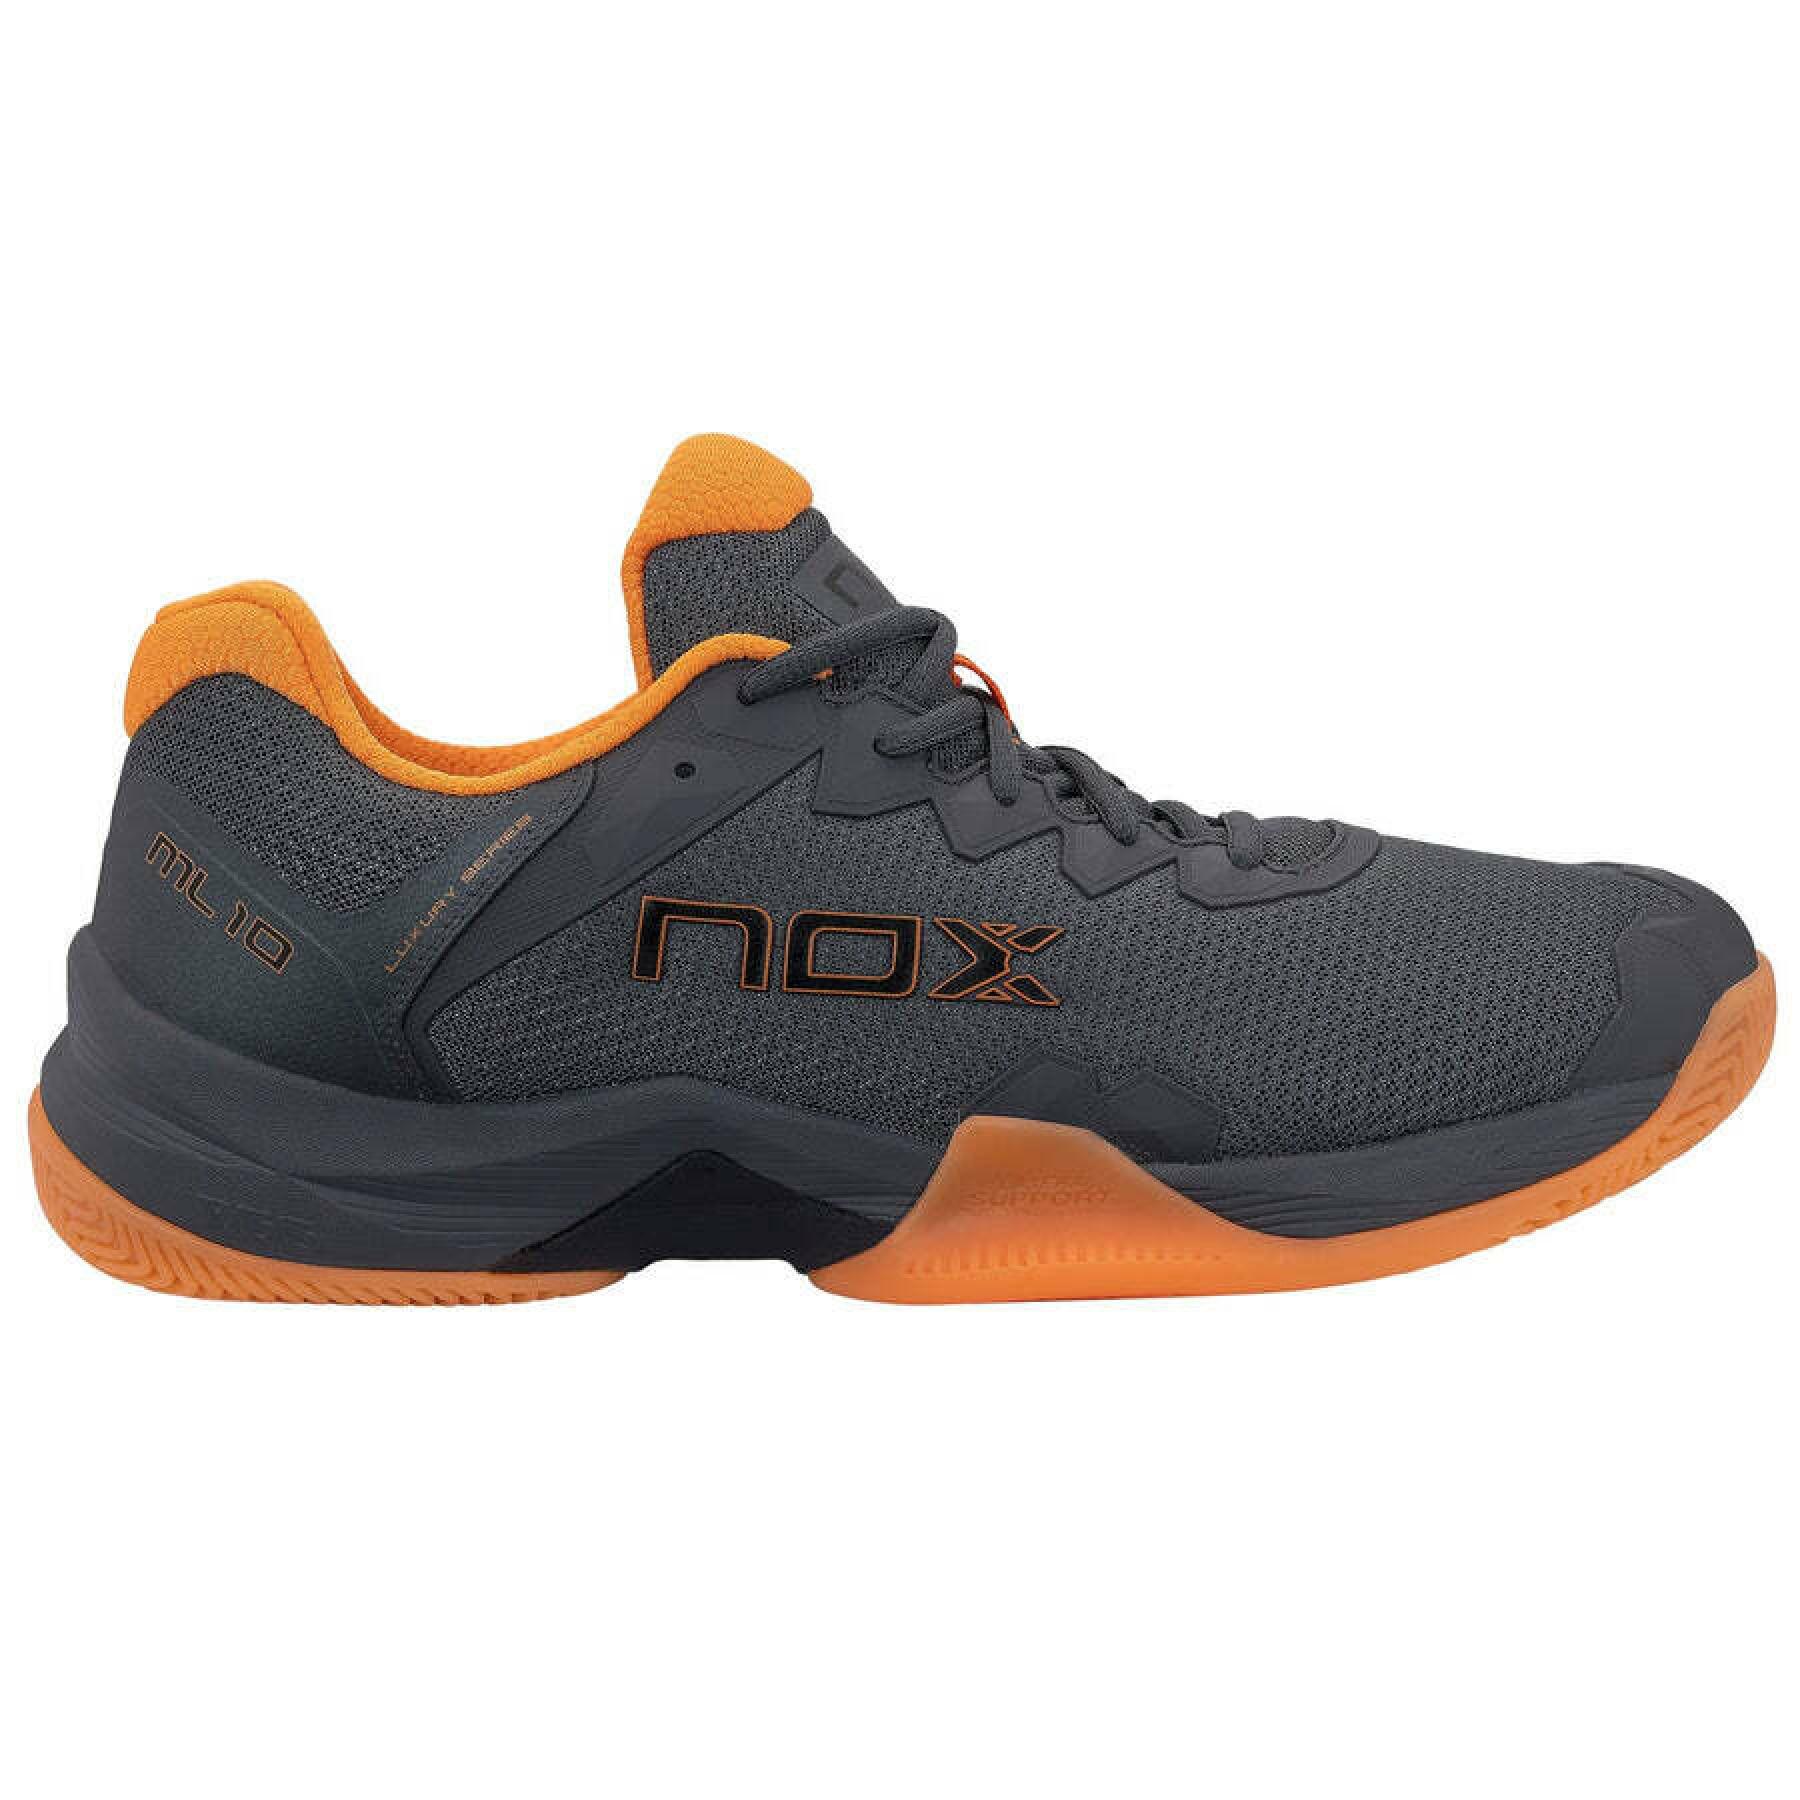 Shoes indoor Nox Ml10 Hexa